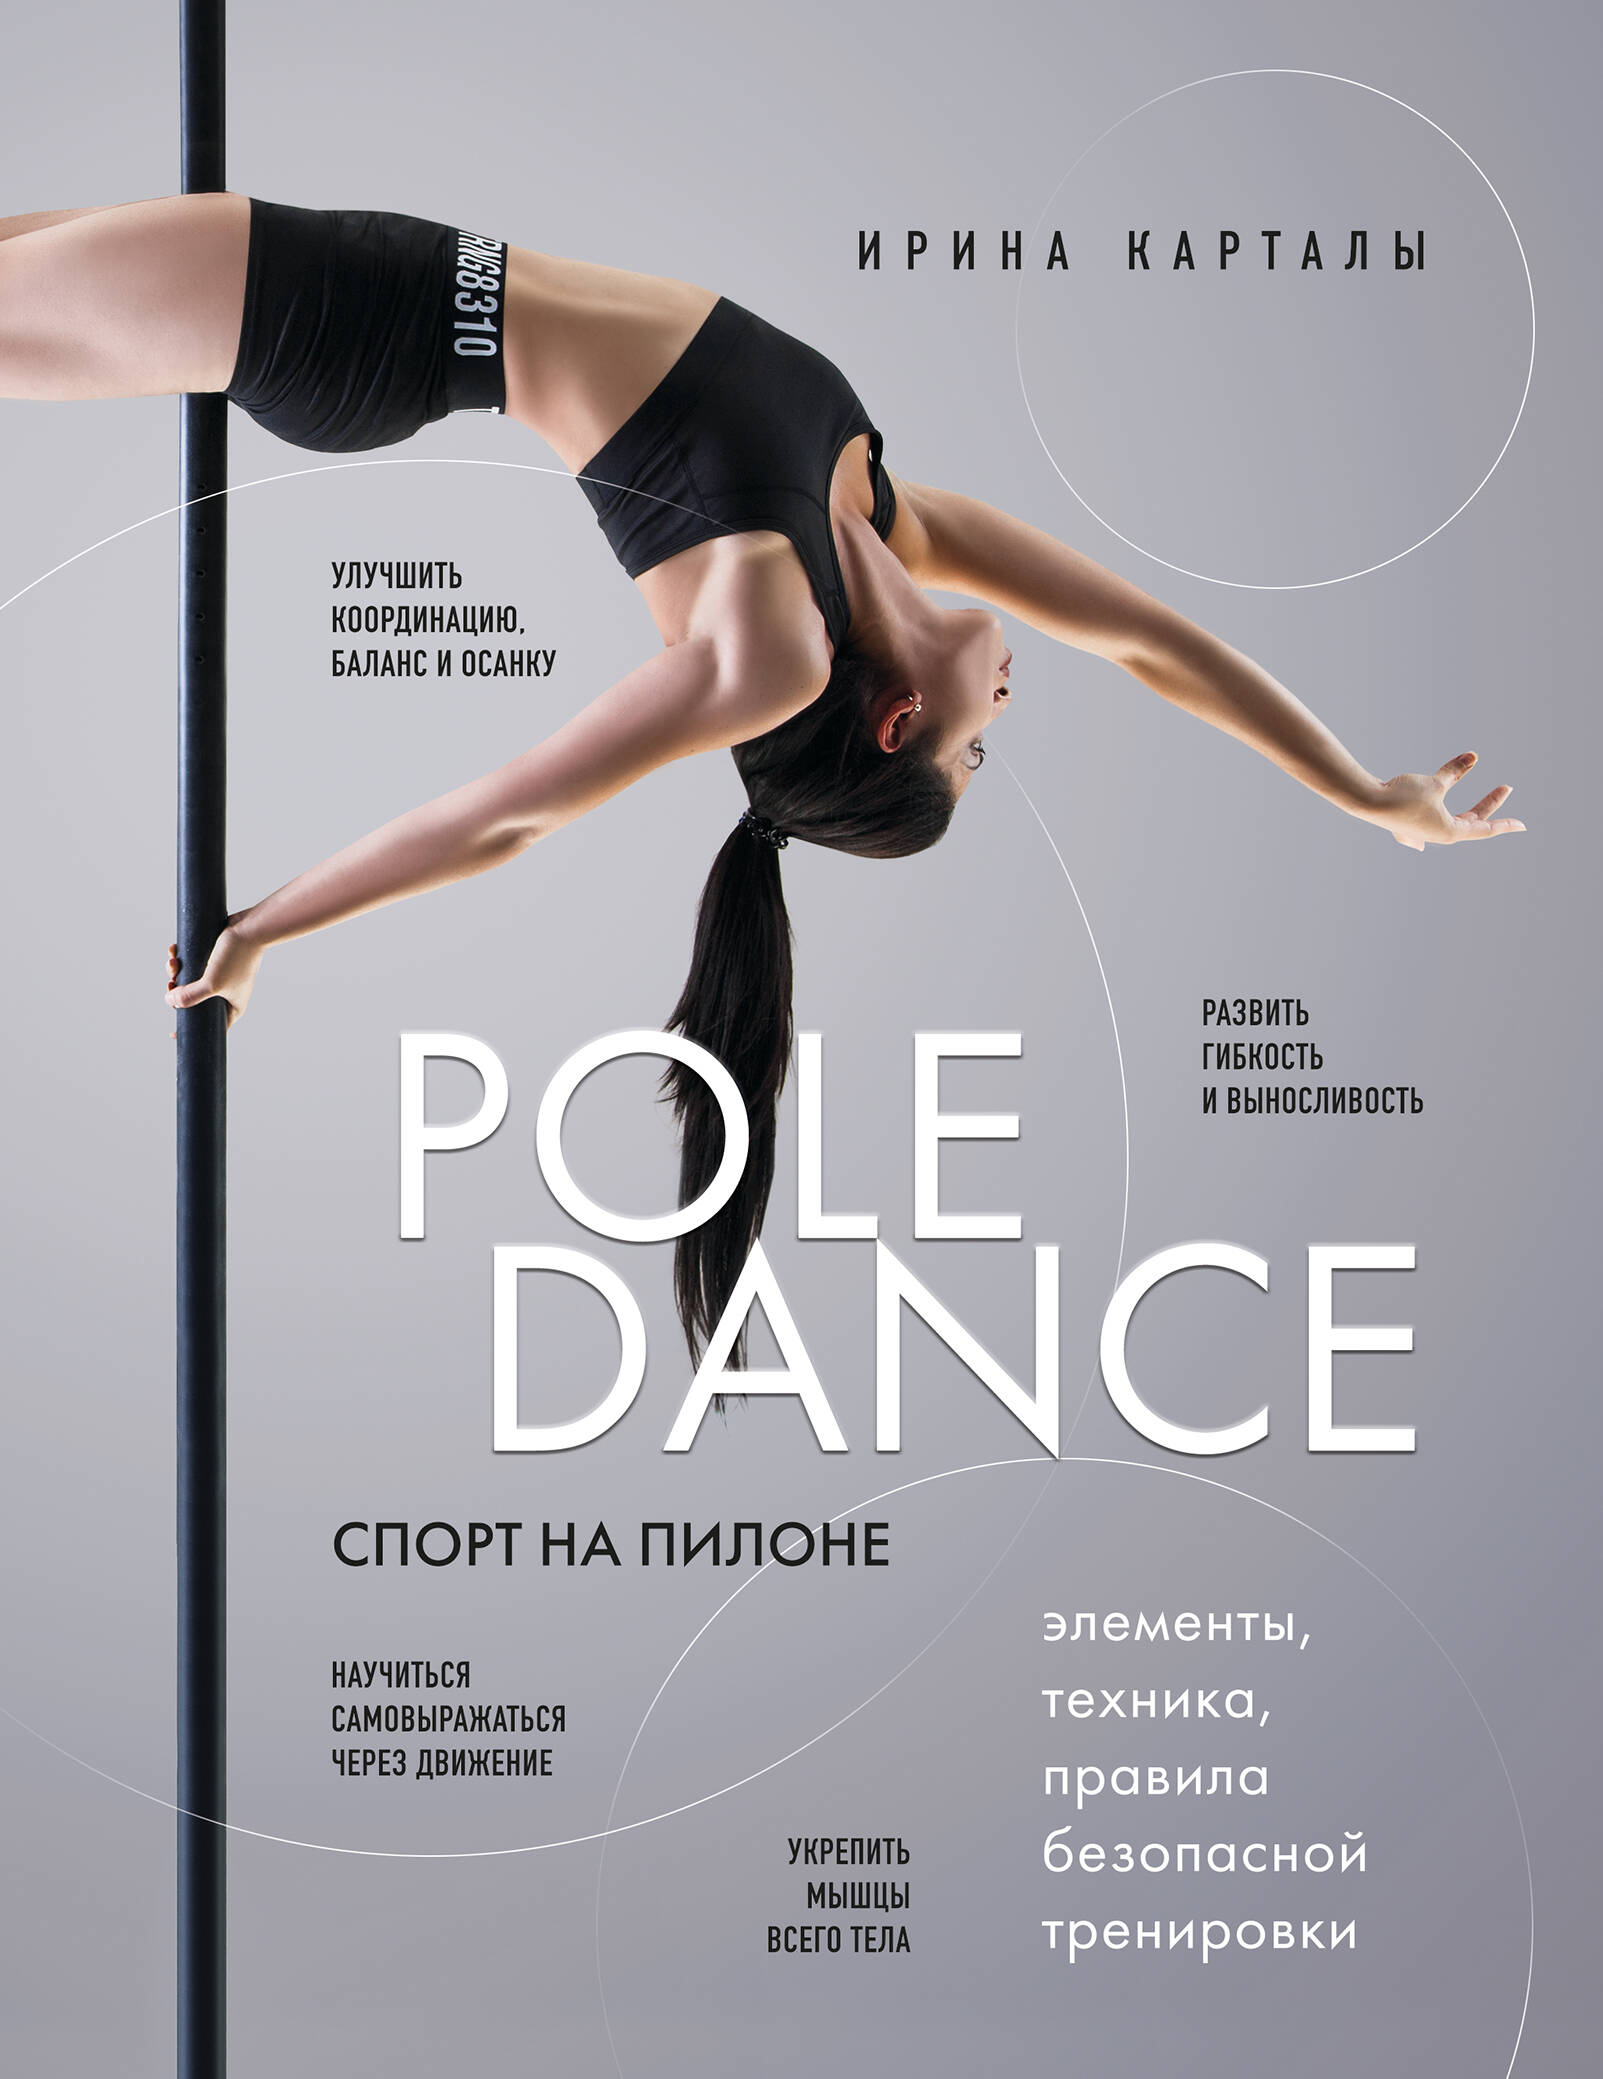    Pole dance  